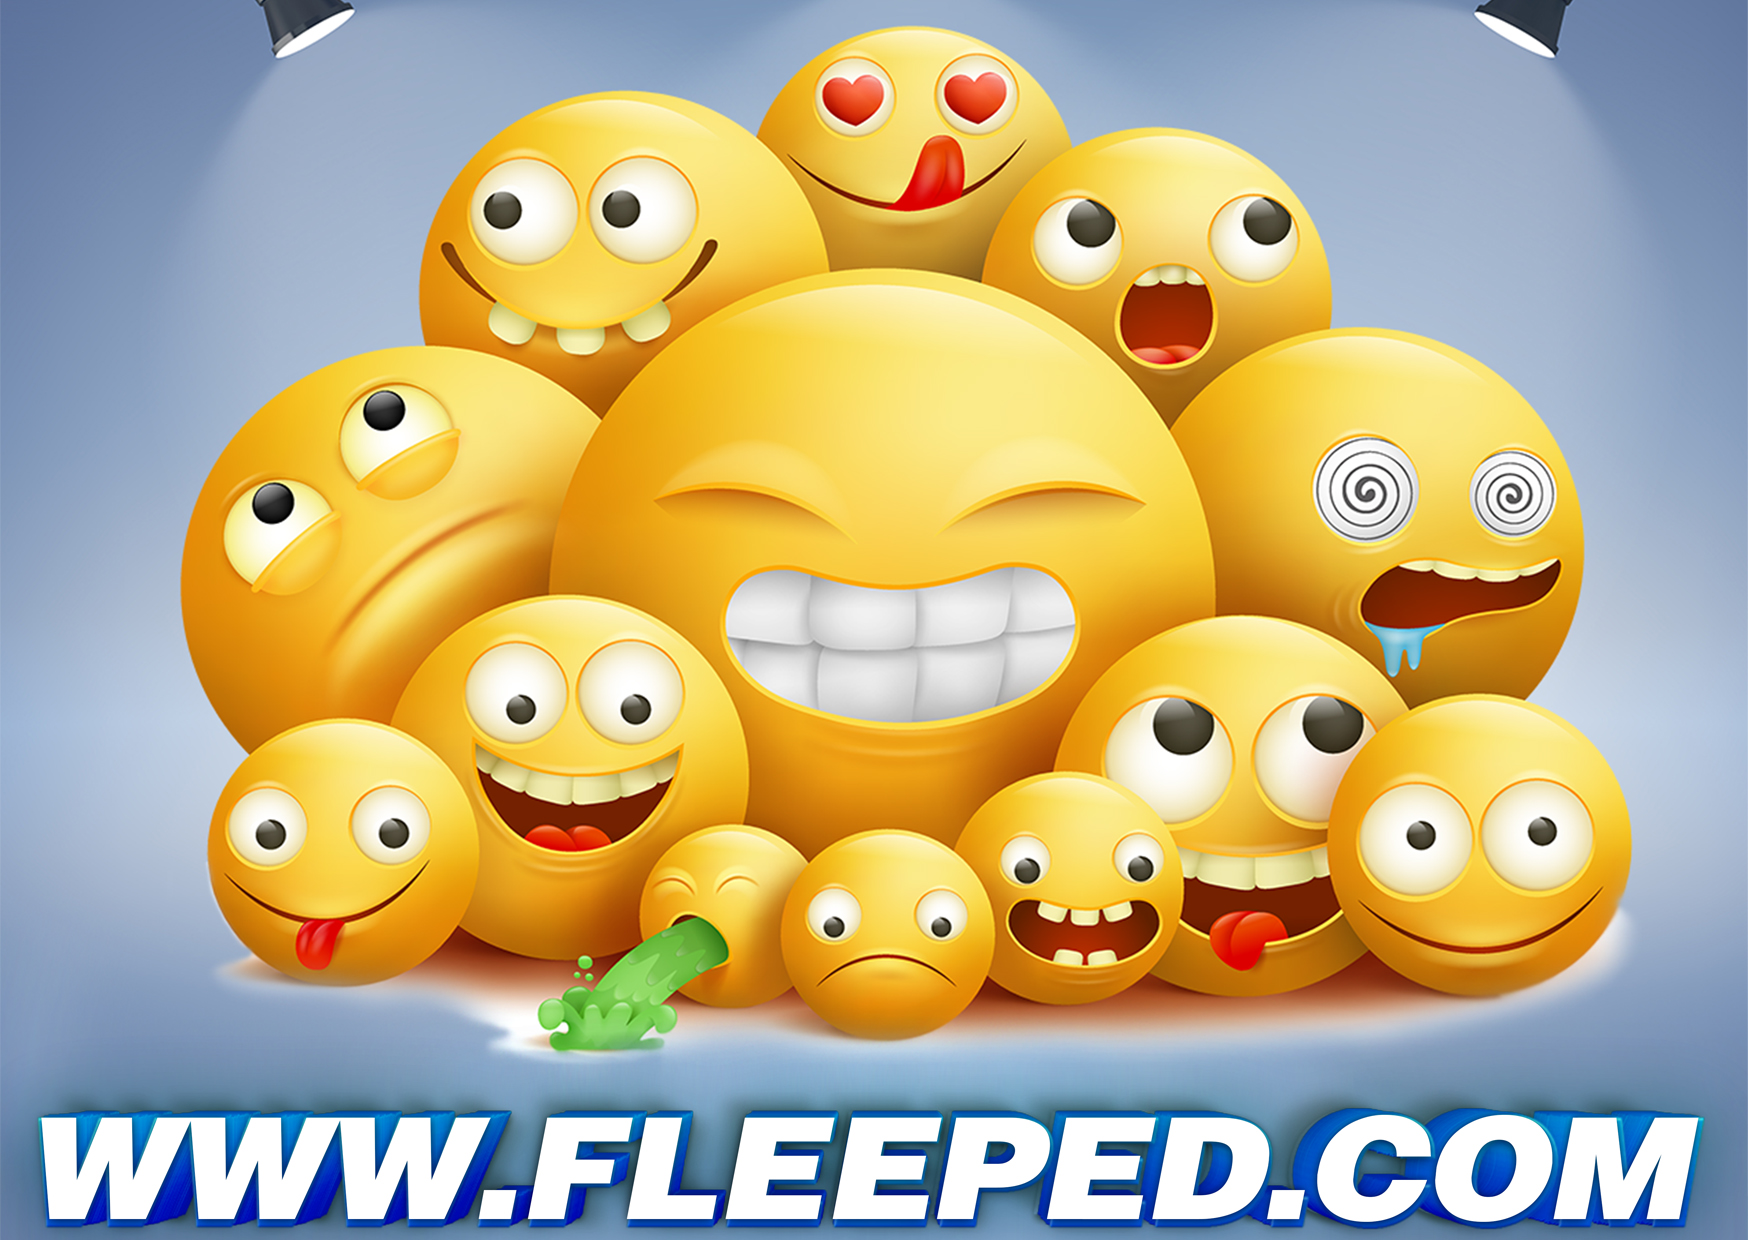 fleeped.com